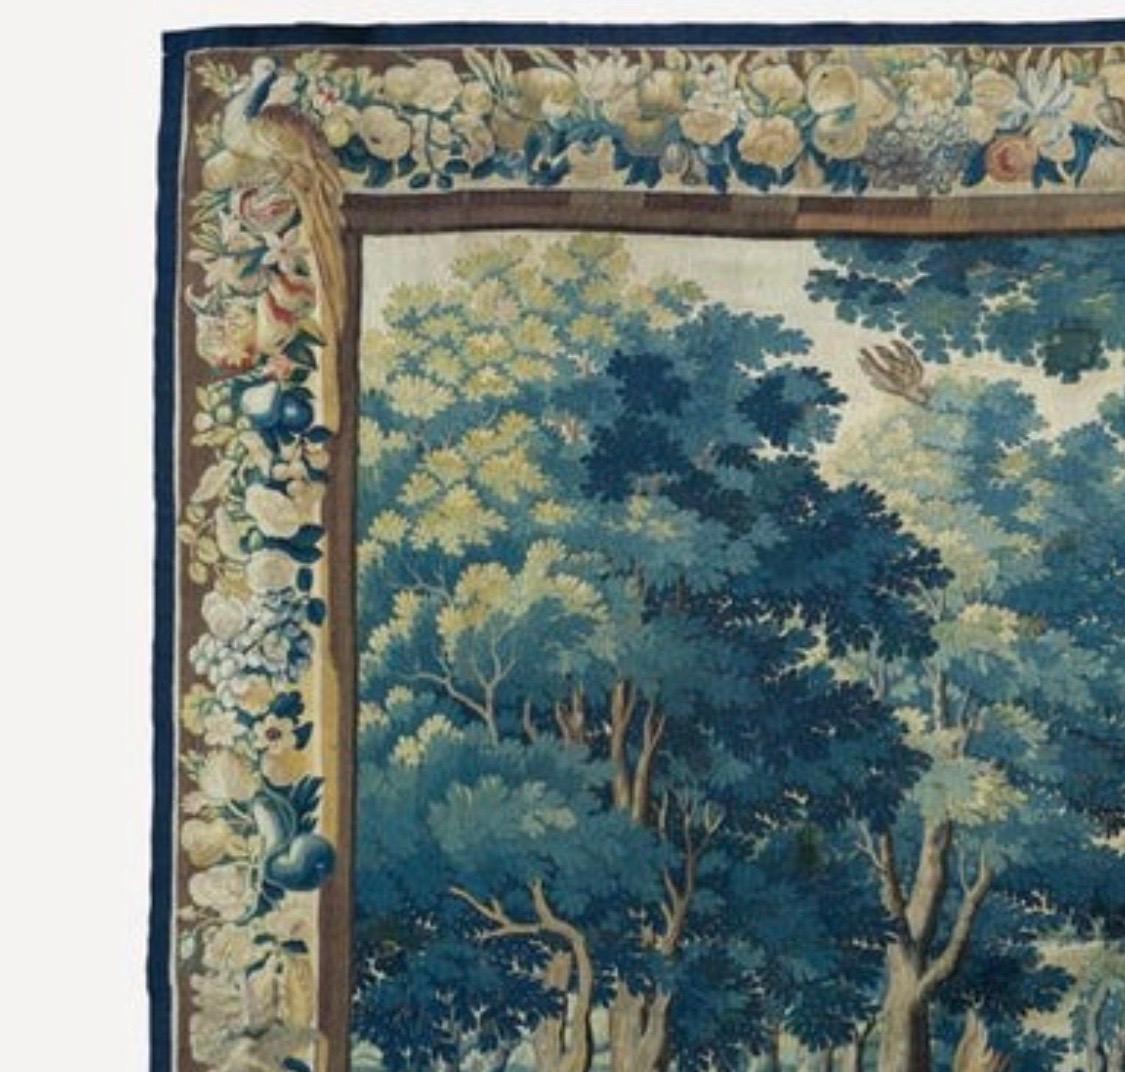 Dies ist eine wunderschöne antike 17. Jahrhundert flämischen verdure Landschaft Wandteppich zeigt eine schöne und reiche Sommer-Szene einer Landschaft mit üppigen Bäumen und Vegetation, mit zwei Figuren im Vordergrund. Die Umrandung besteht aus